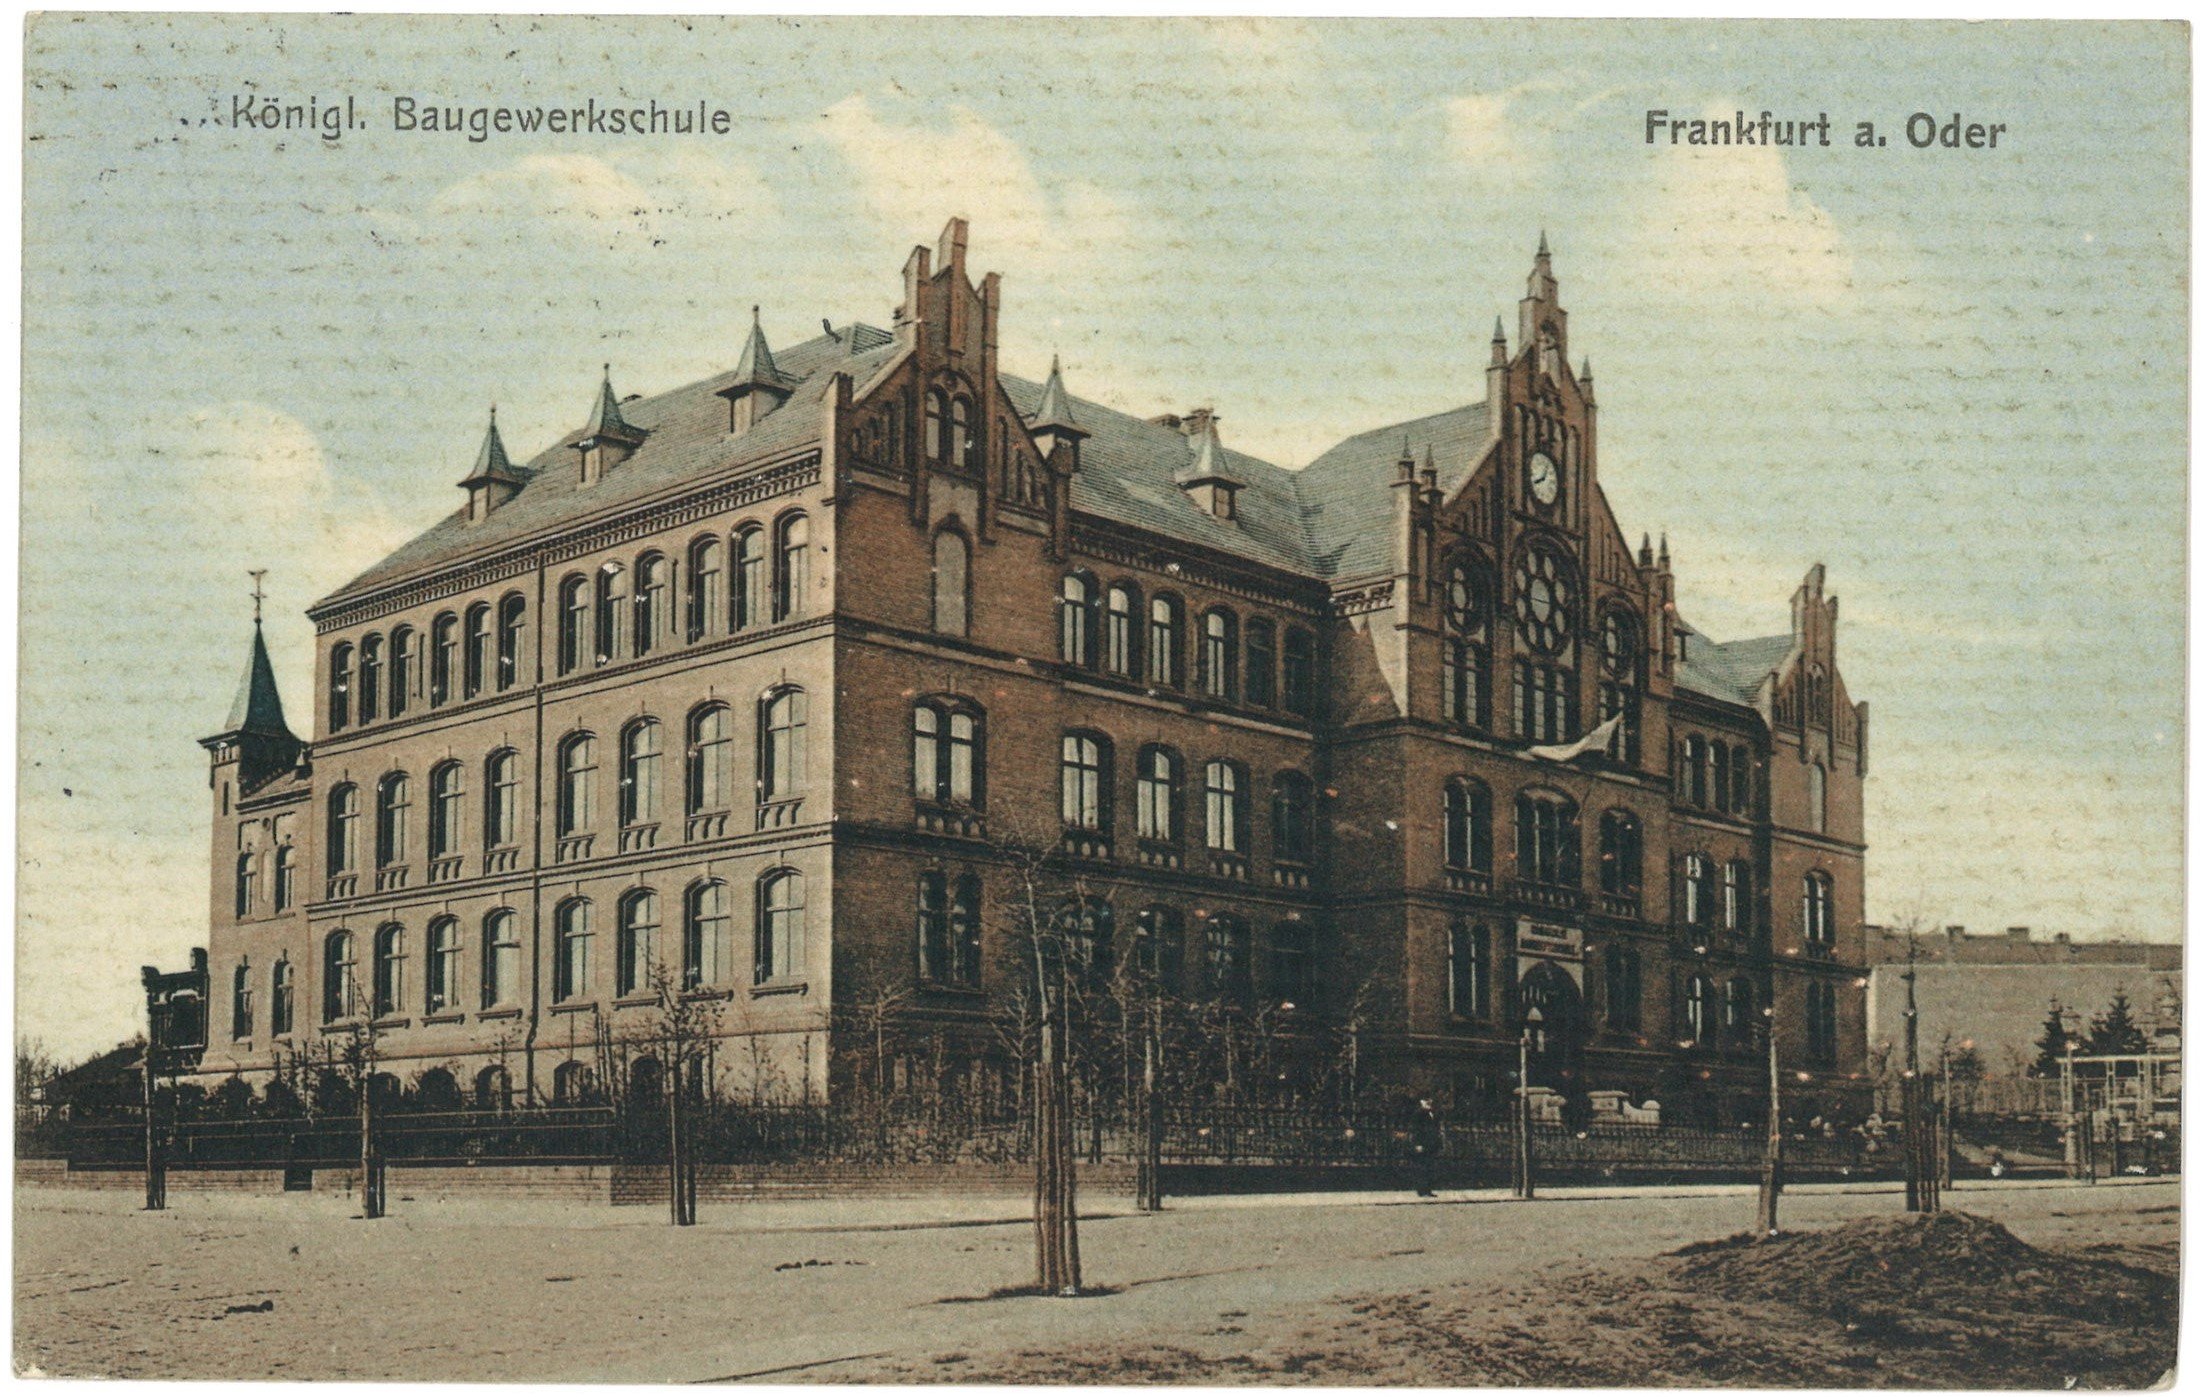 Frankfurt (Oder): Baugewerkschule von Nordosten (Landesgeschichtliche Vereinigung für die Mark Brandenburg e.V., Archiv CC BY)